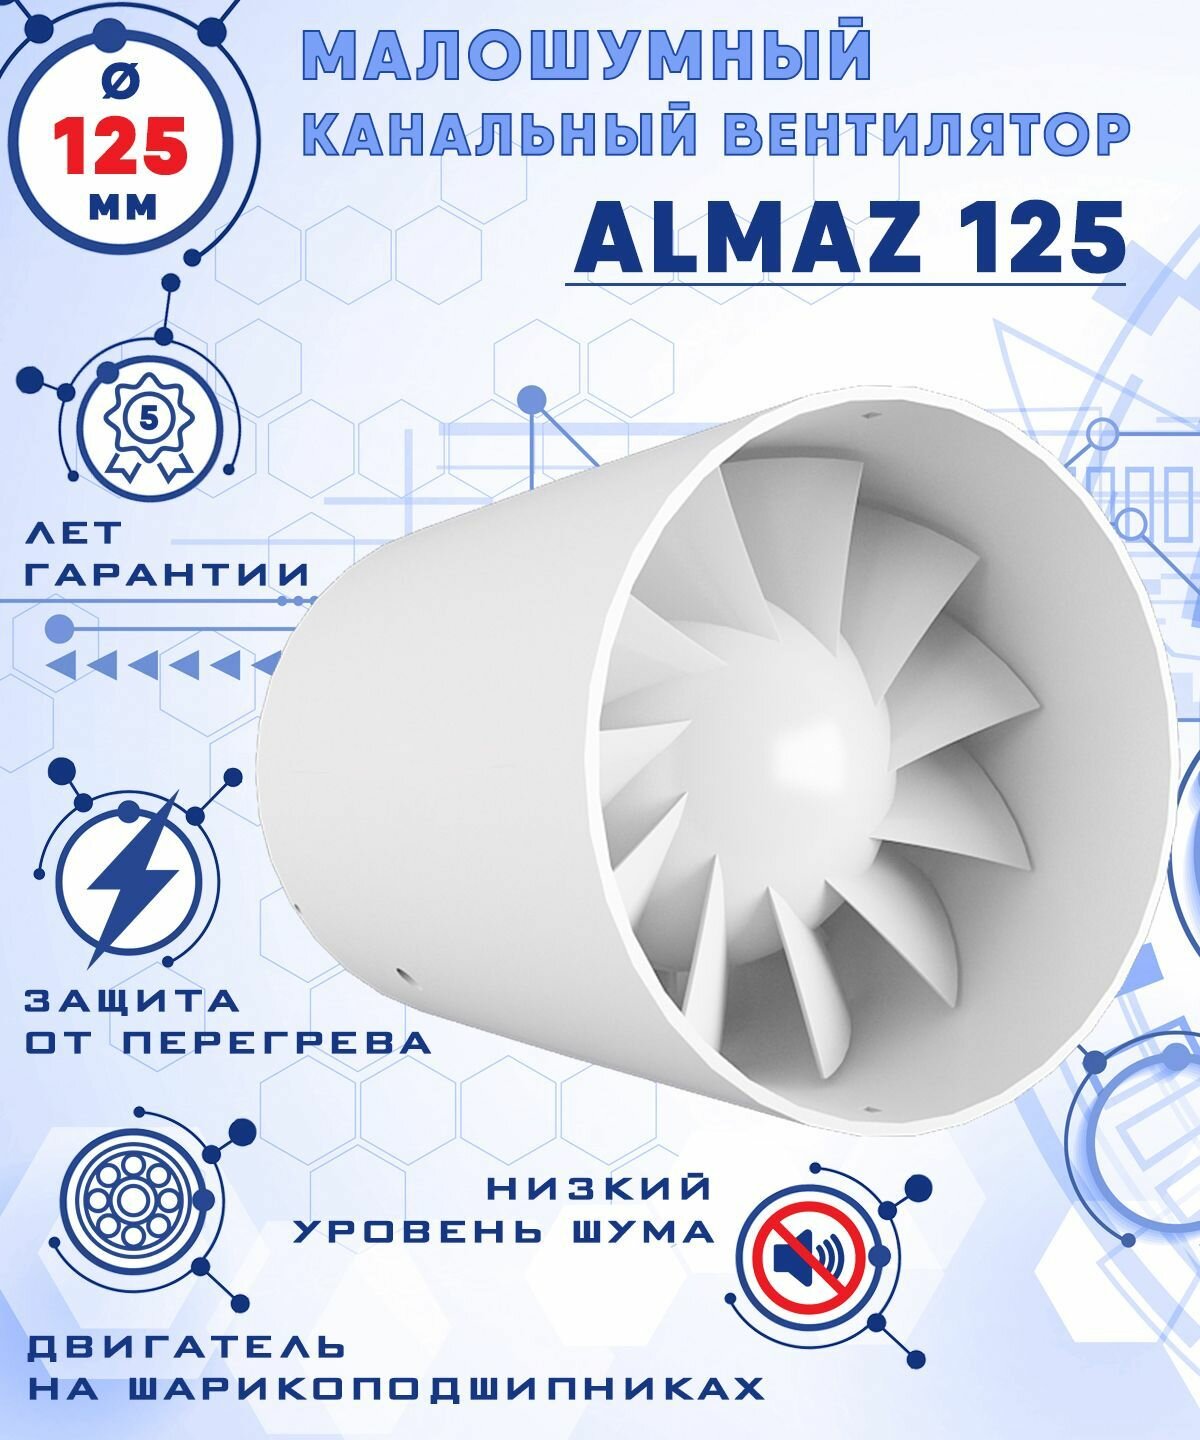 ALMAZ 125 осевой канальный 197 куб. м/ч. малошумный 32 Дб вентилятор 17 Вт на шарикоподшипниках диаметр 125 мм ZERNBERG